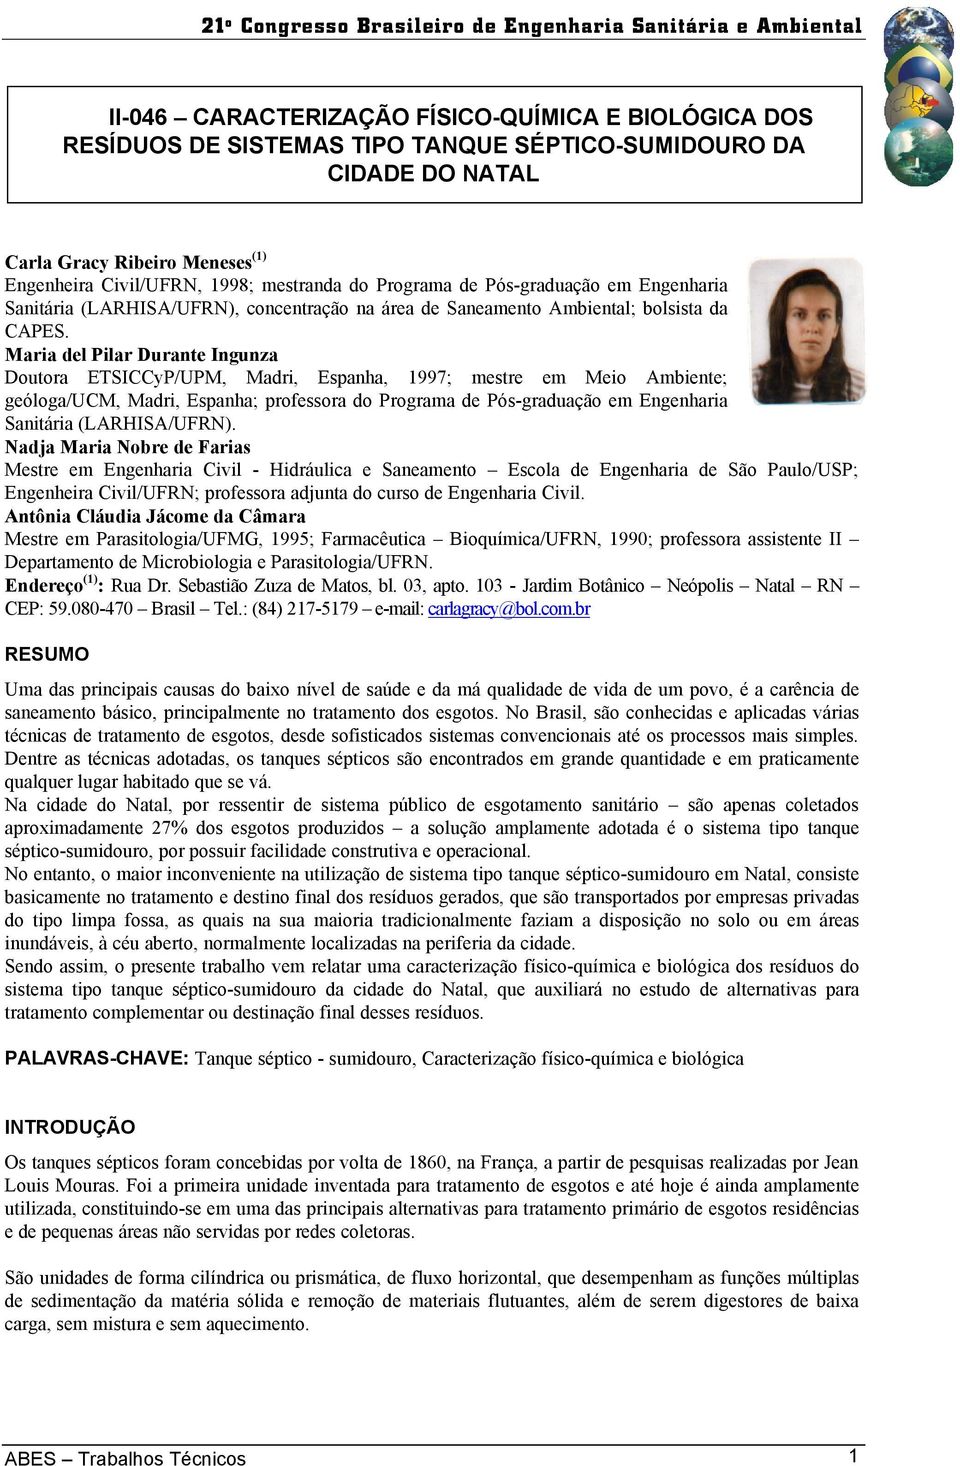 Maria del Pilar Durante Ingunza Doutora ETSICCyP/UPM, Madri, Espanha, 1997; mestre em Meio Ambiente; geóloga/ucm, Madri, Espanha; professora do Programa de Pós-graduação em Engenharia Sanitária